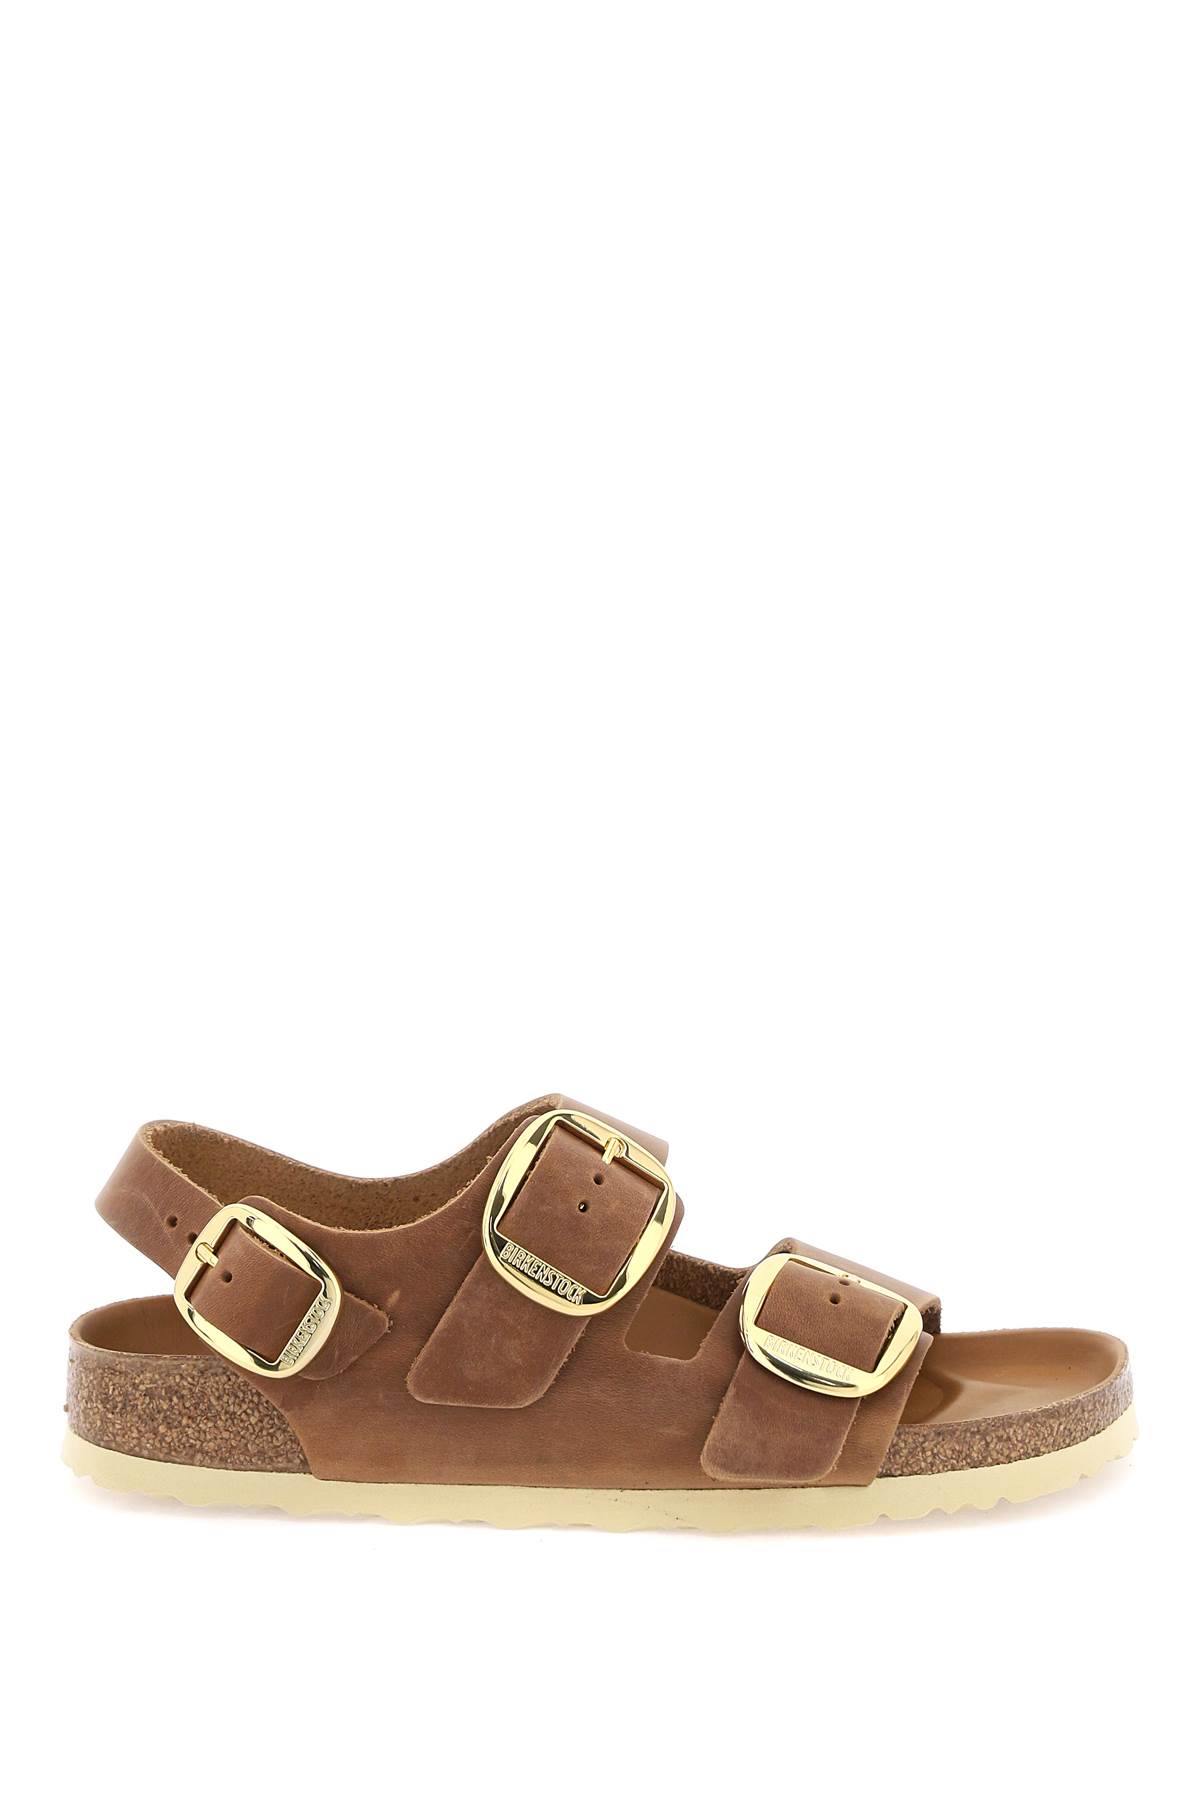 Shop Birkenstock Milano Big Buckle Sandals In Cognac (brown)